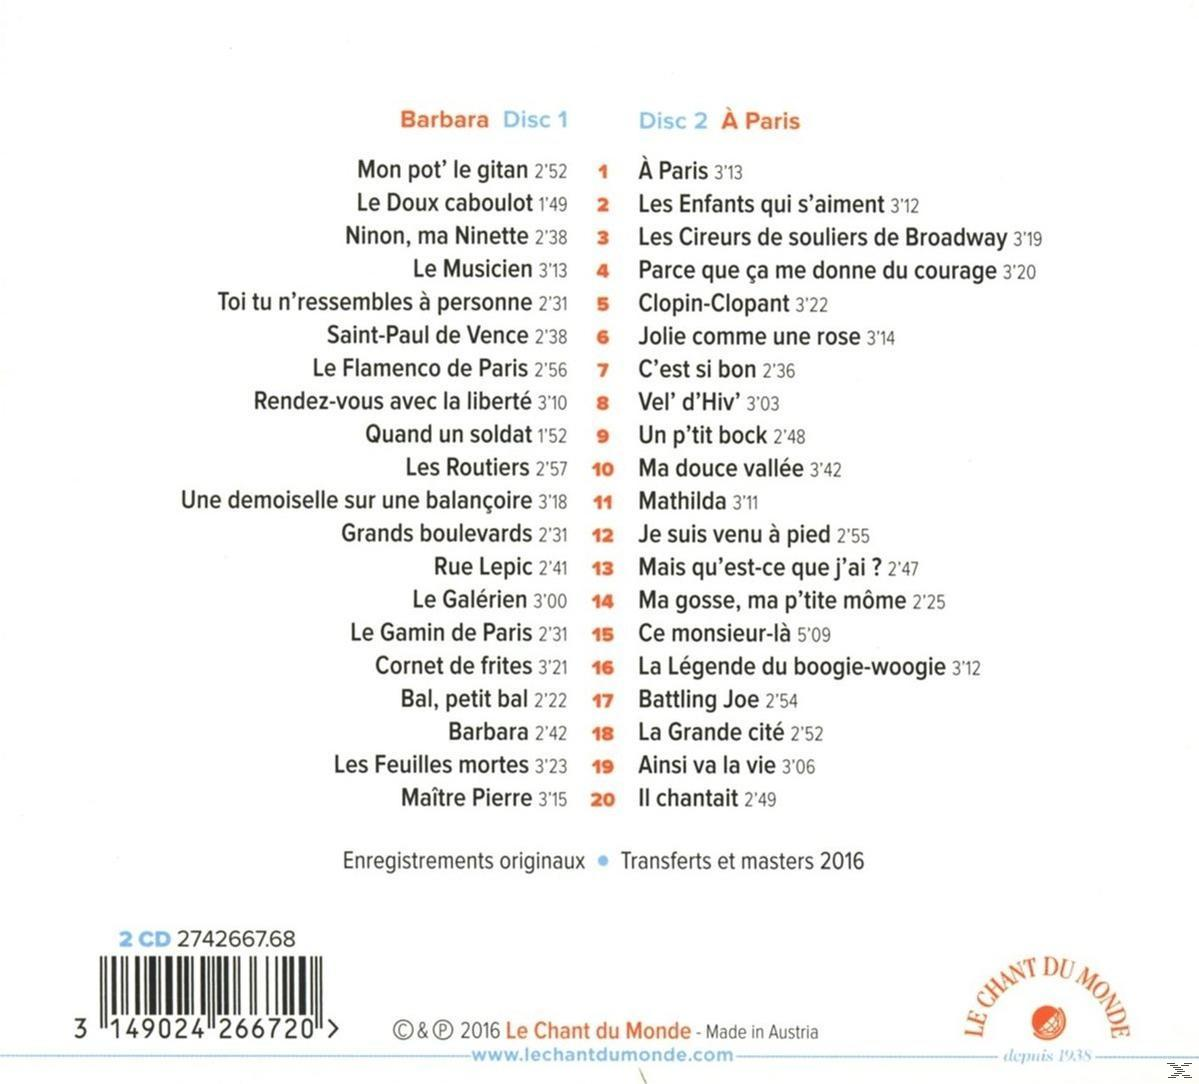 Montand - Yves Barbara (CD) -